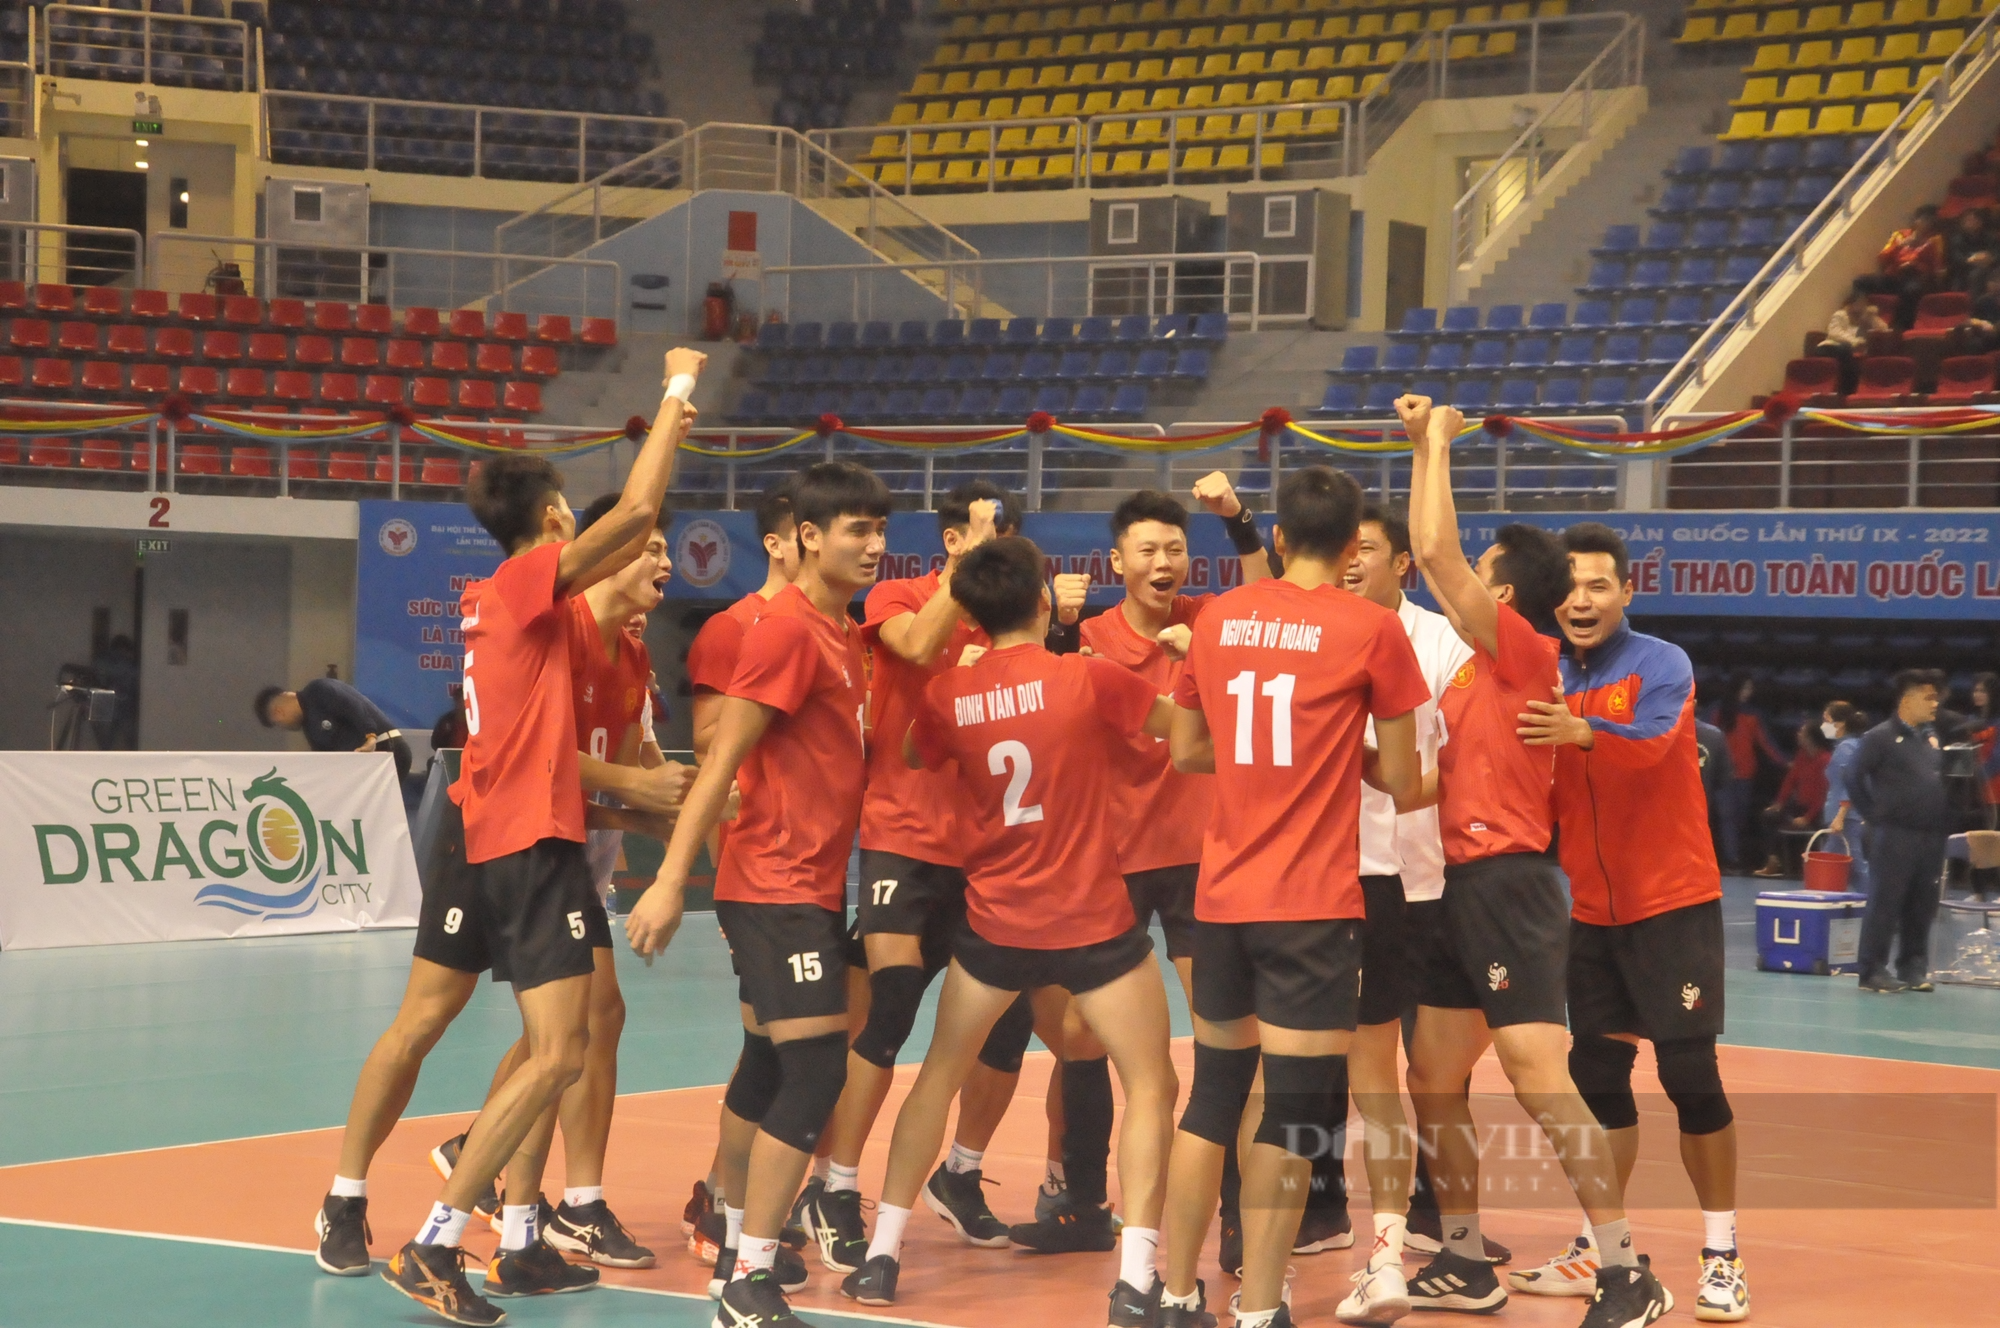 Quân đội giành cú đúp HCV ở môn bóng chuyền tại Đại hội Thể thao toàn quốc - Ảnh 7.